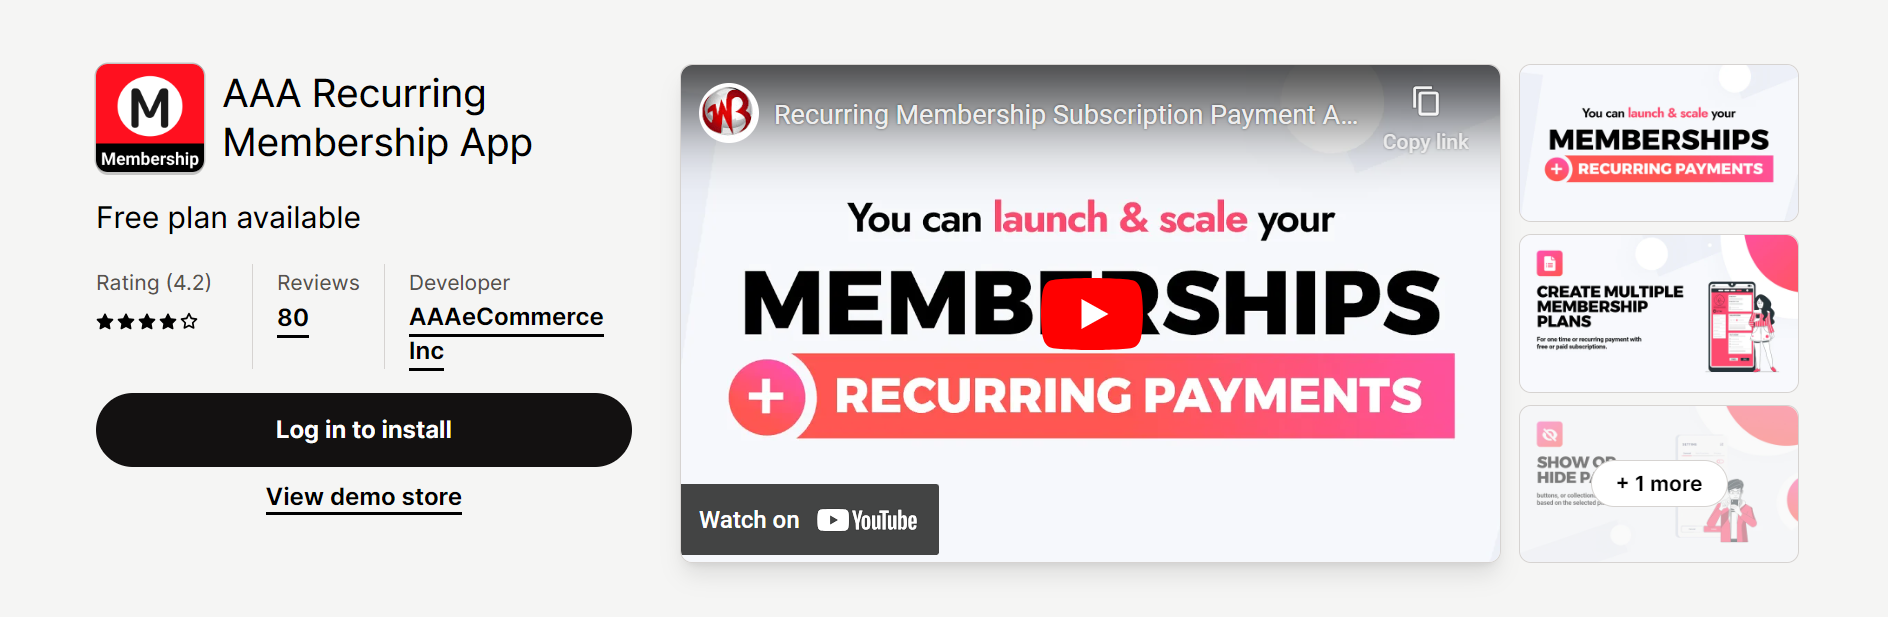 AAA Recurring Membership App